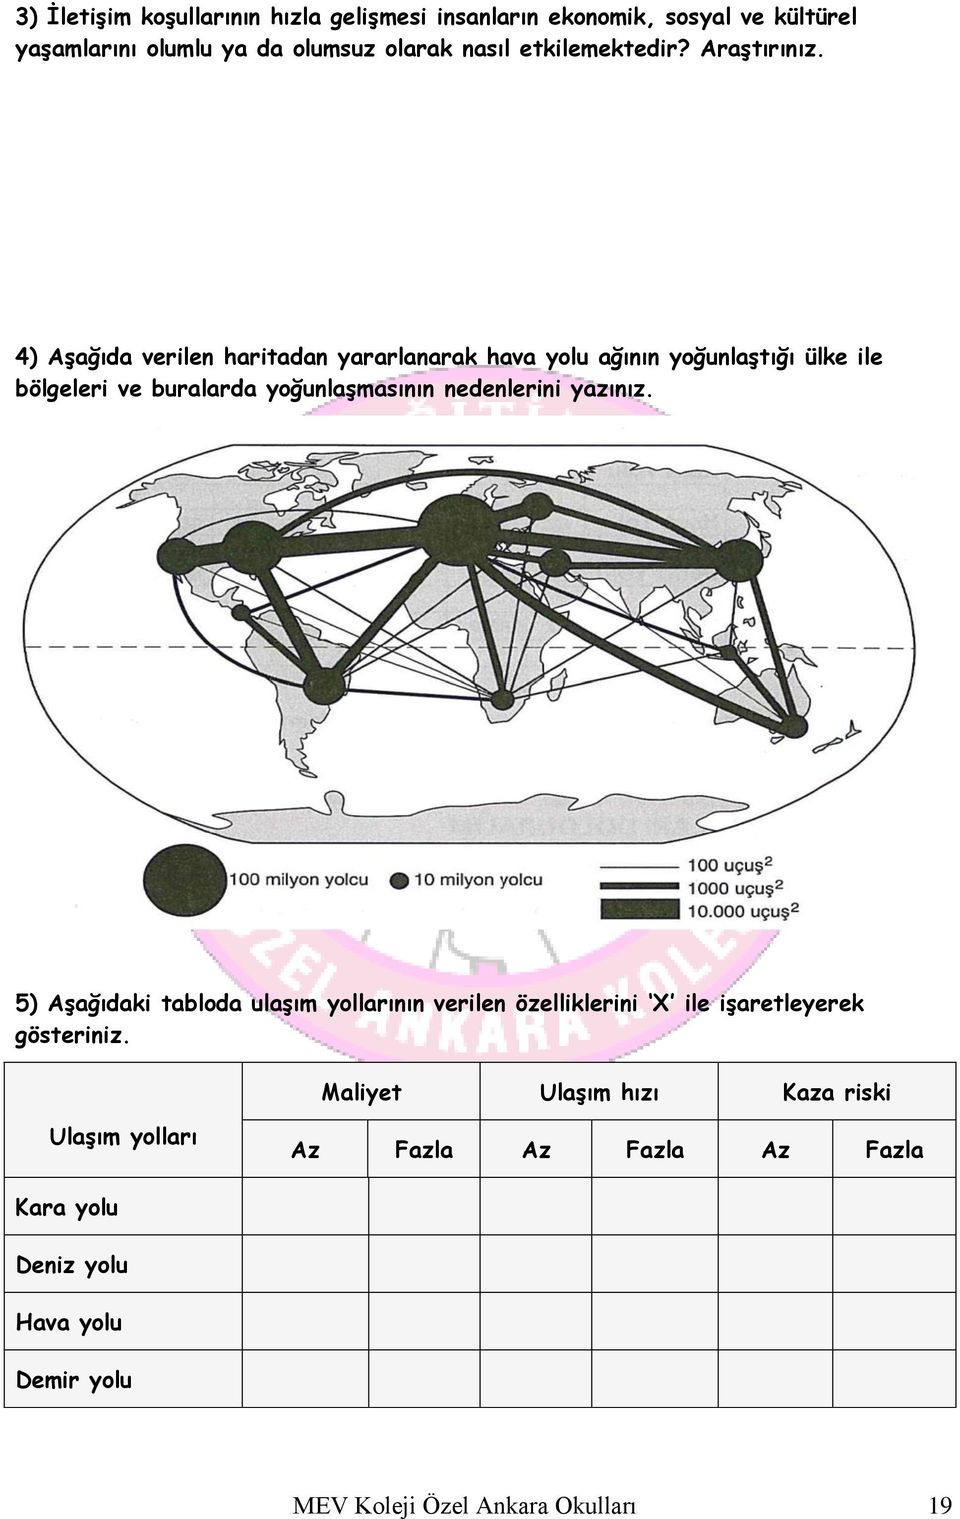 4) Aşağıda verilen haritadan yararlanarak hava yolu ağının yoğunlaştığı ülke ile bölgeleri ve buralarda yoğunlaşmasının nedenlerini